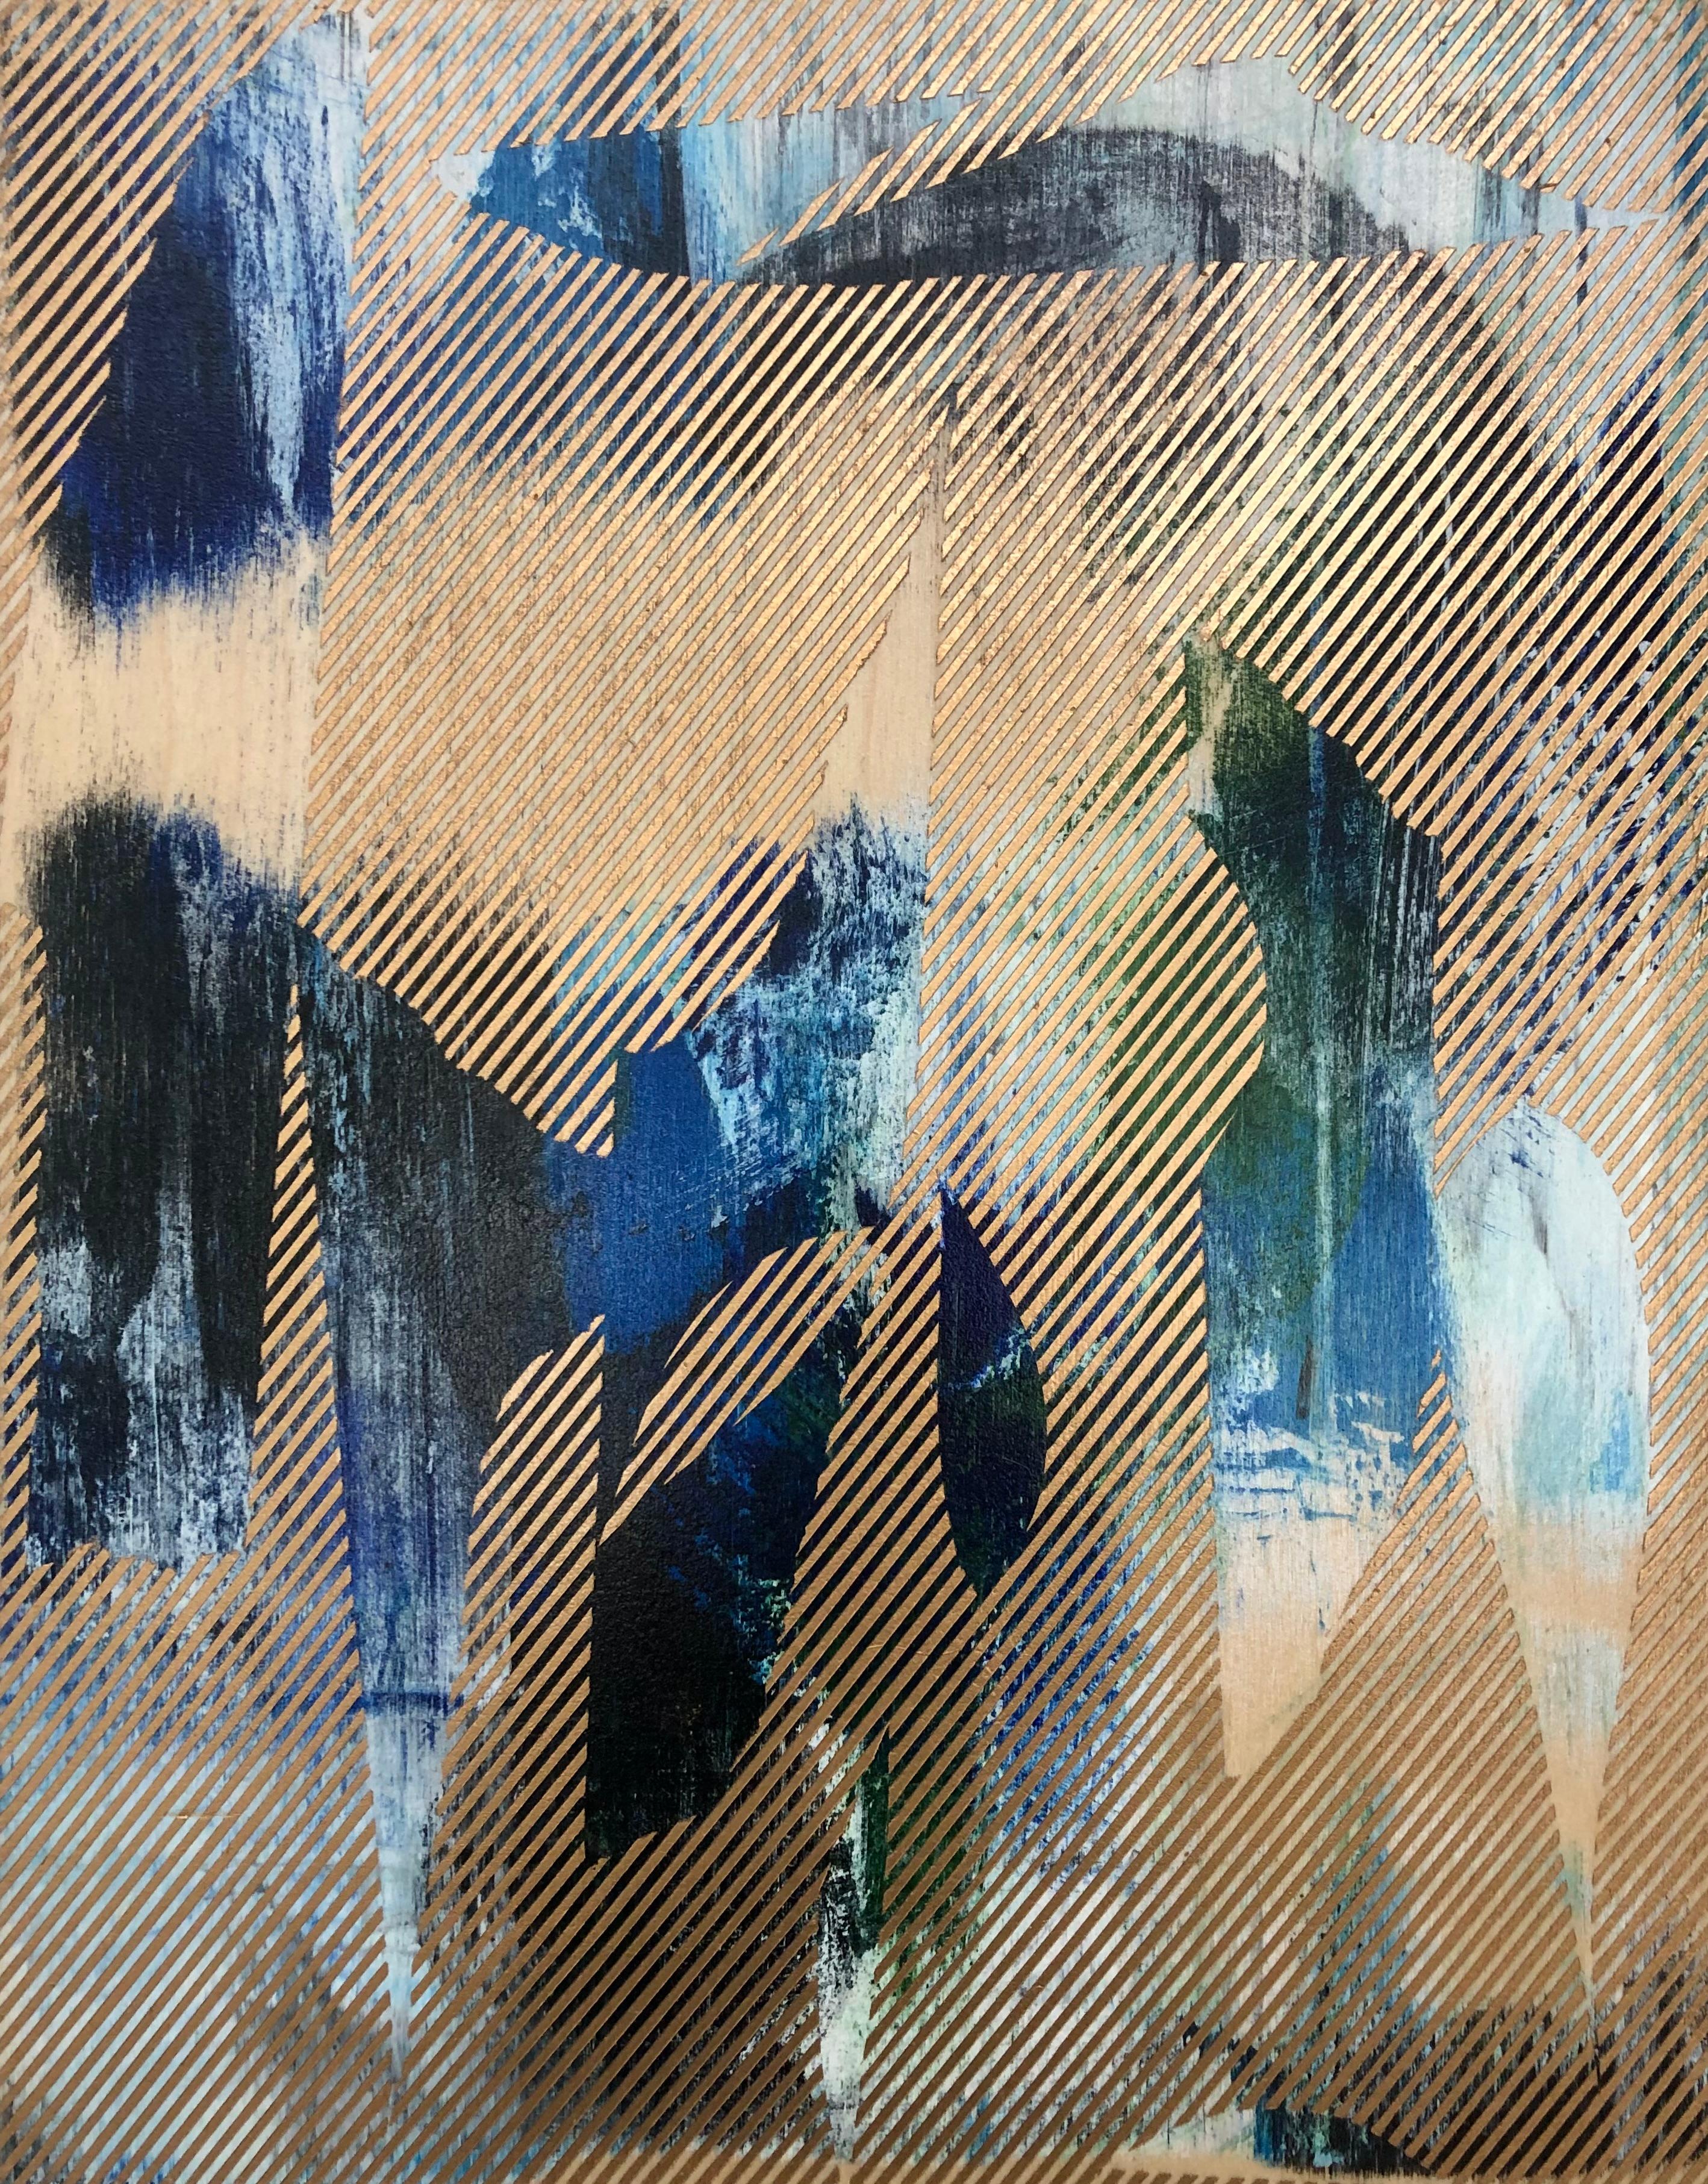 Mangata 44 (peinture à petite échelle à grille dorée en bois abstrait op art floral) - Mixed Media Art de Melisa Taylor Metzger